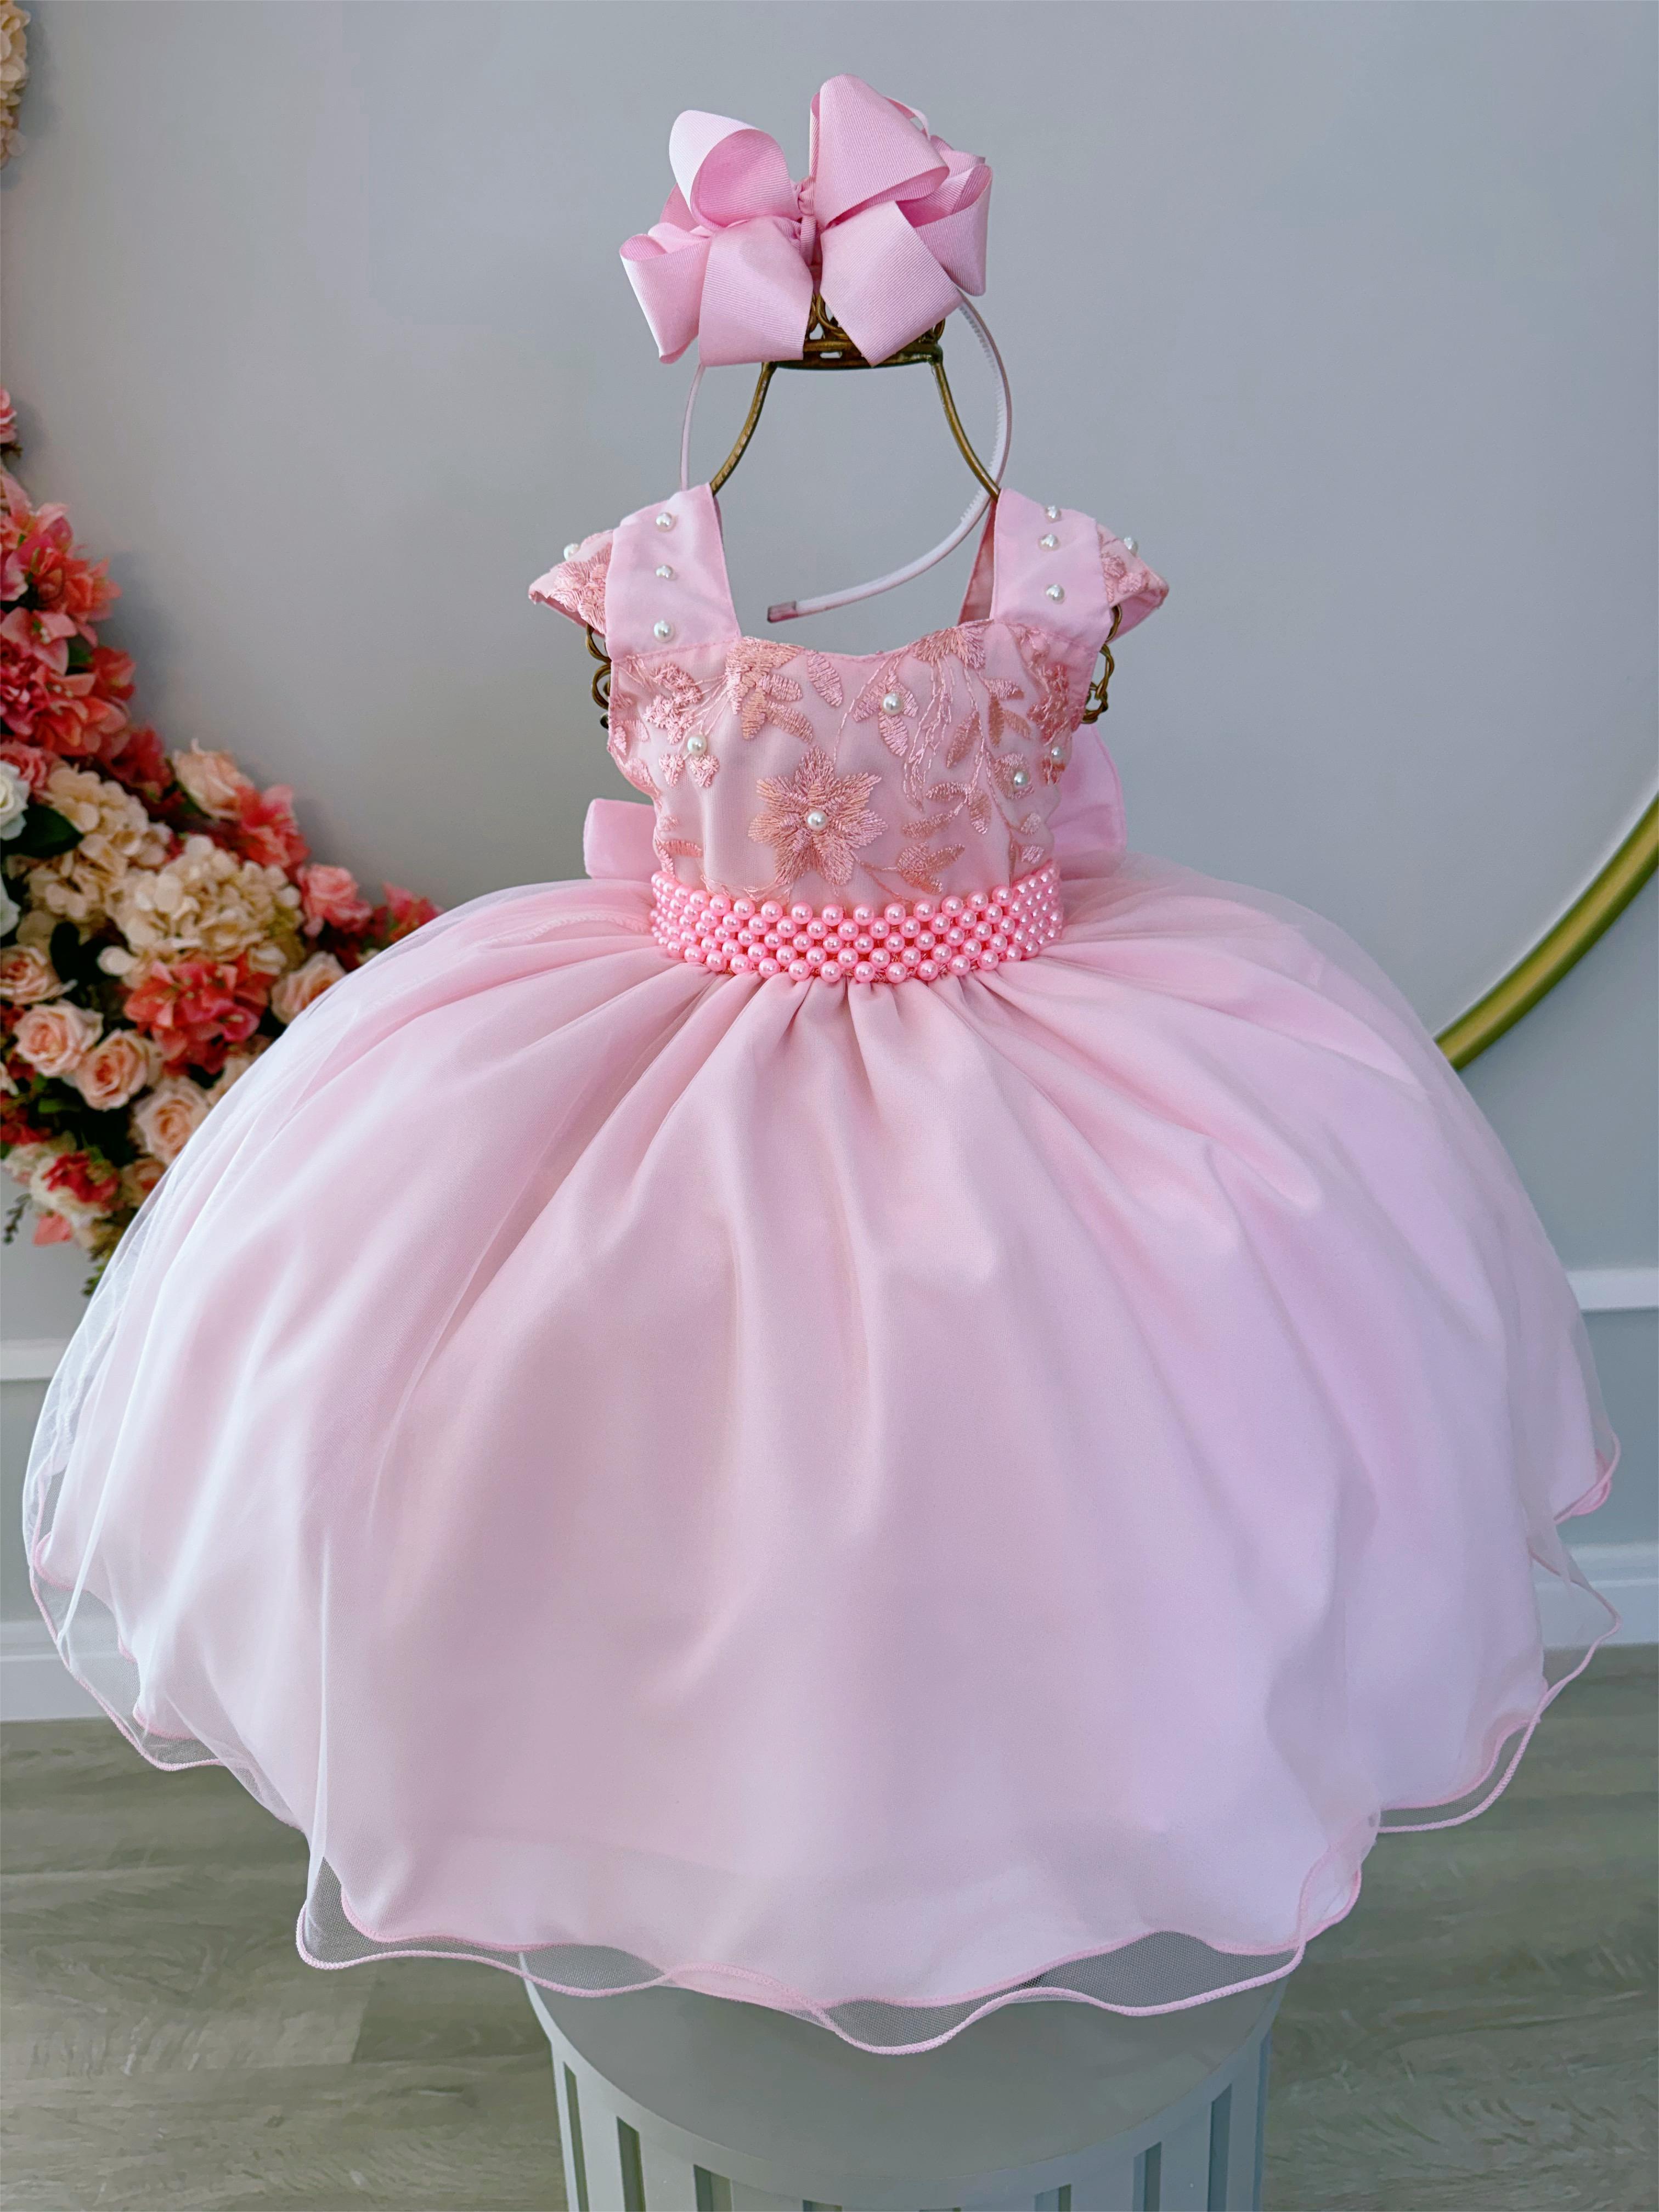 Vestido Infantil Rosa Bebê C/ Renda Luxo e Cinto de Pérolas